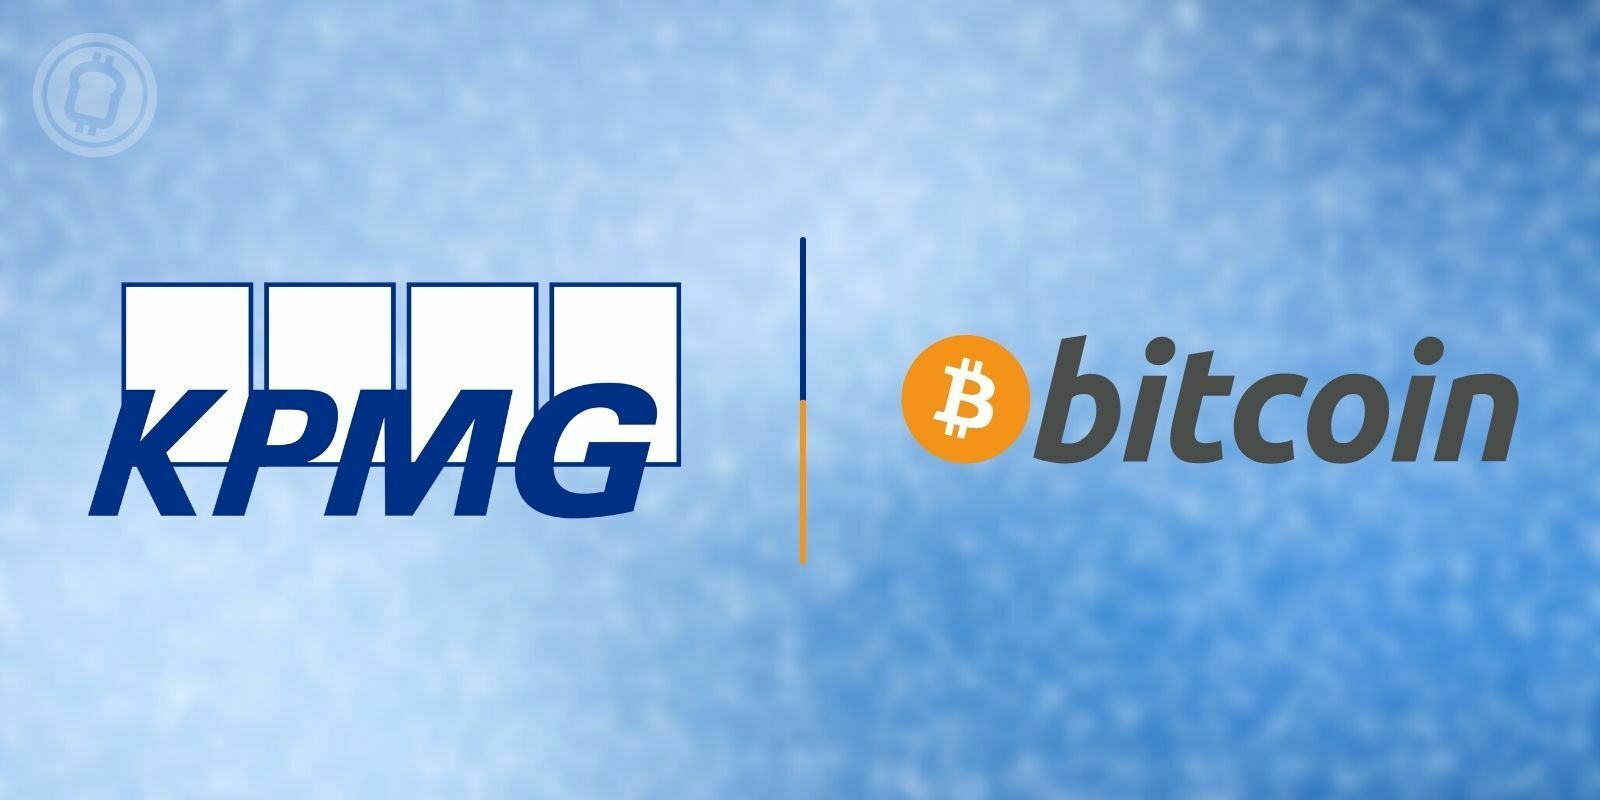 Le cabinet d'audit majeur KPMG ajoute du Bitcoin (BTC) et de l'Ether (ETH) à sa trésorerie